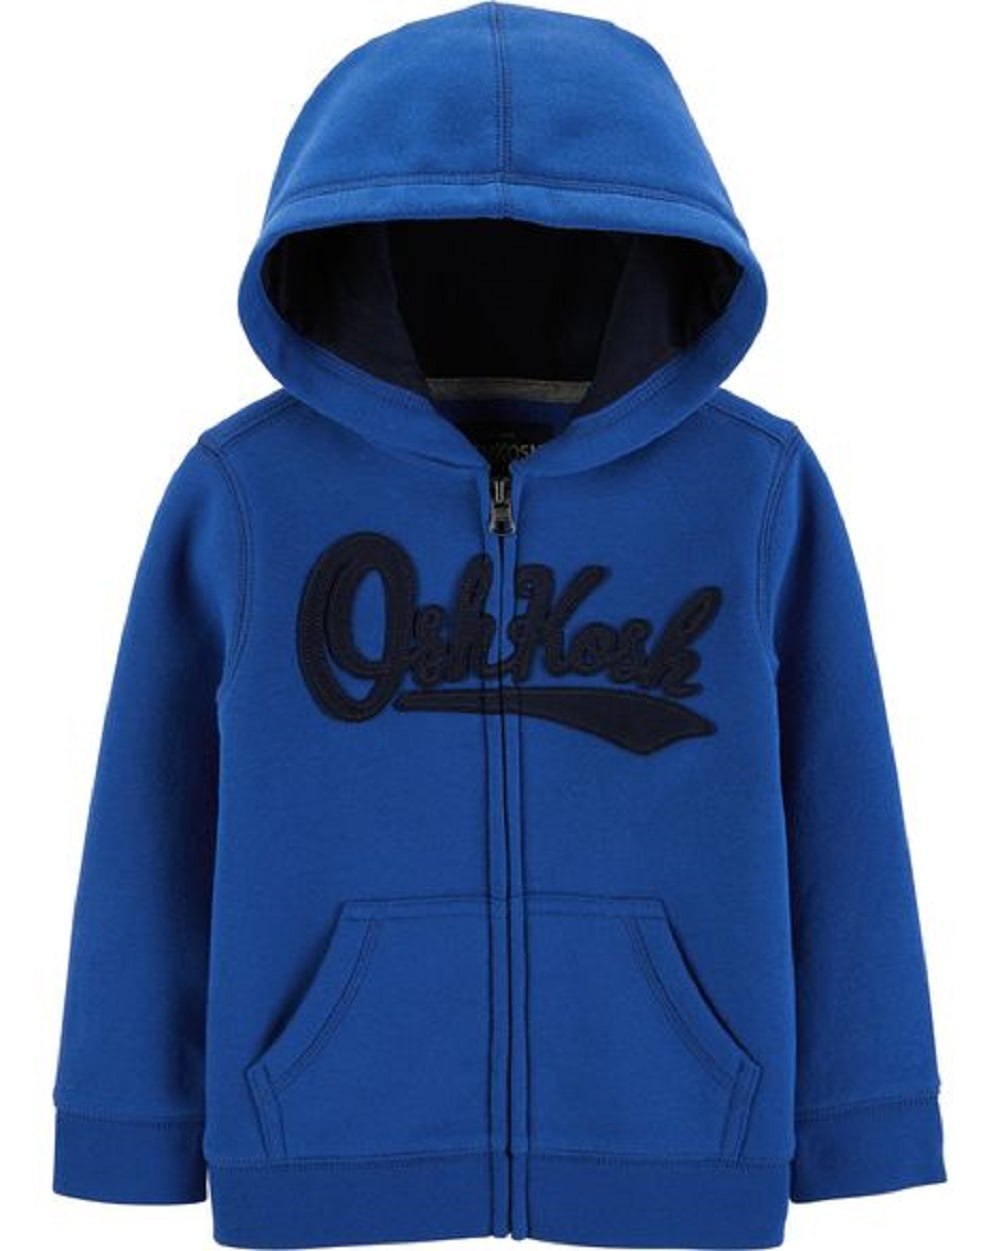 OshKosh Boys Full Zip Logo Hoodie Hooded Sweatshirt